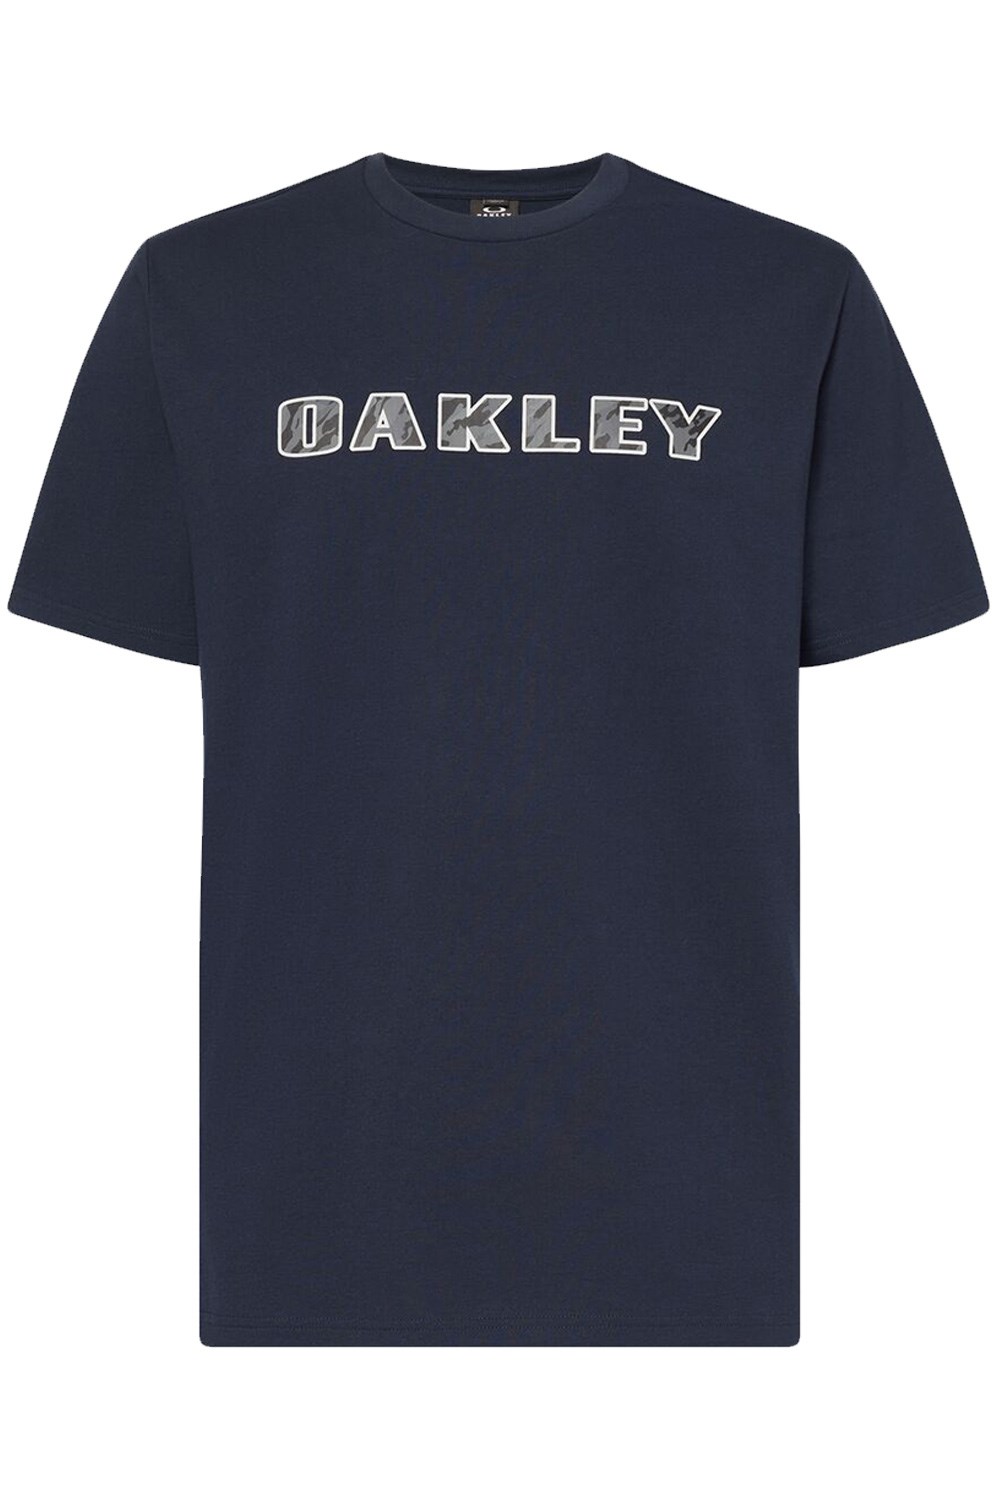 Sun Valley Mens T-Shirt -